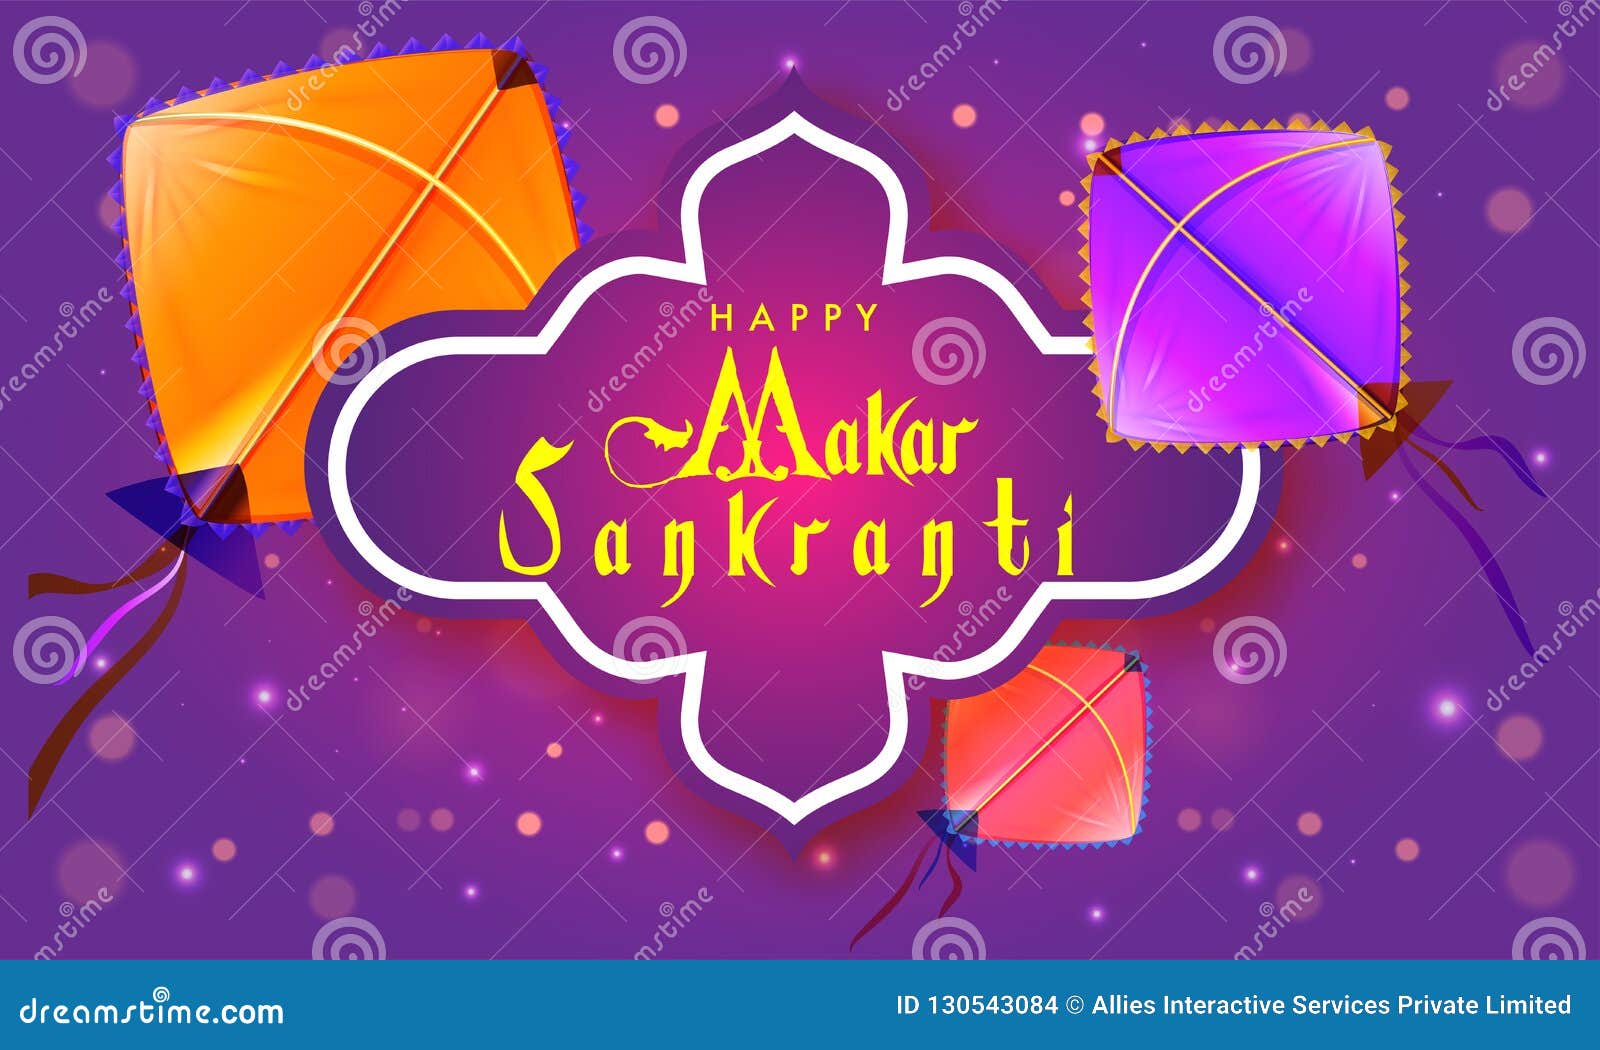 Happy Makar Sankranti Poster or Banner Design in Purple Color De Stock  Illustration - Illustration of background, culture: 130543084